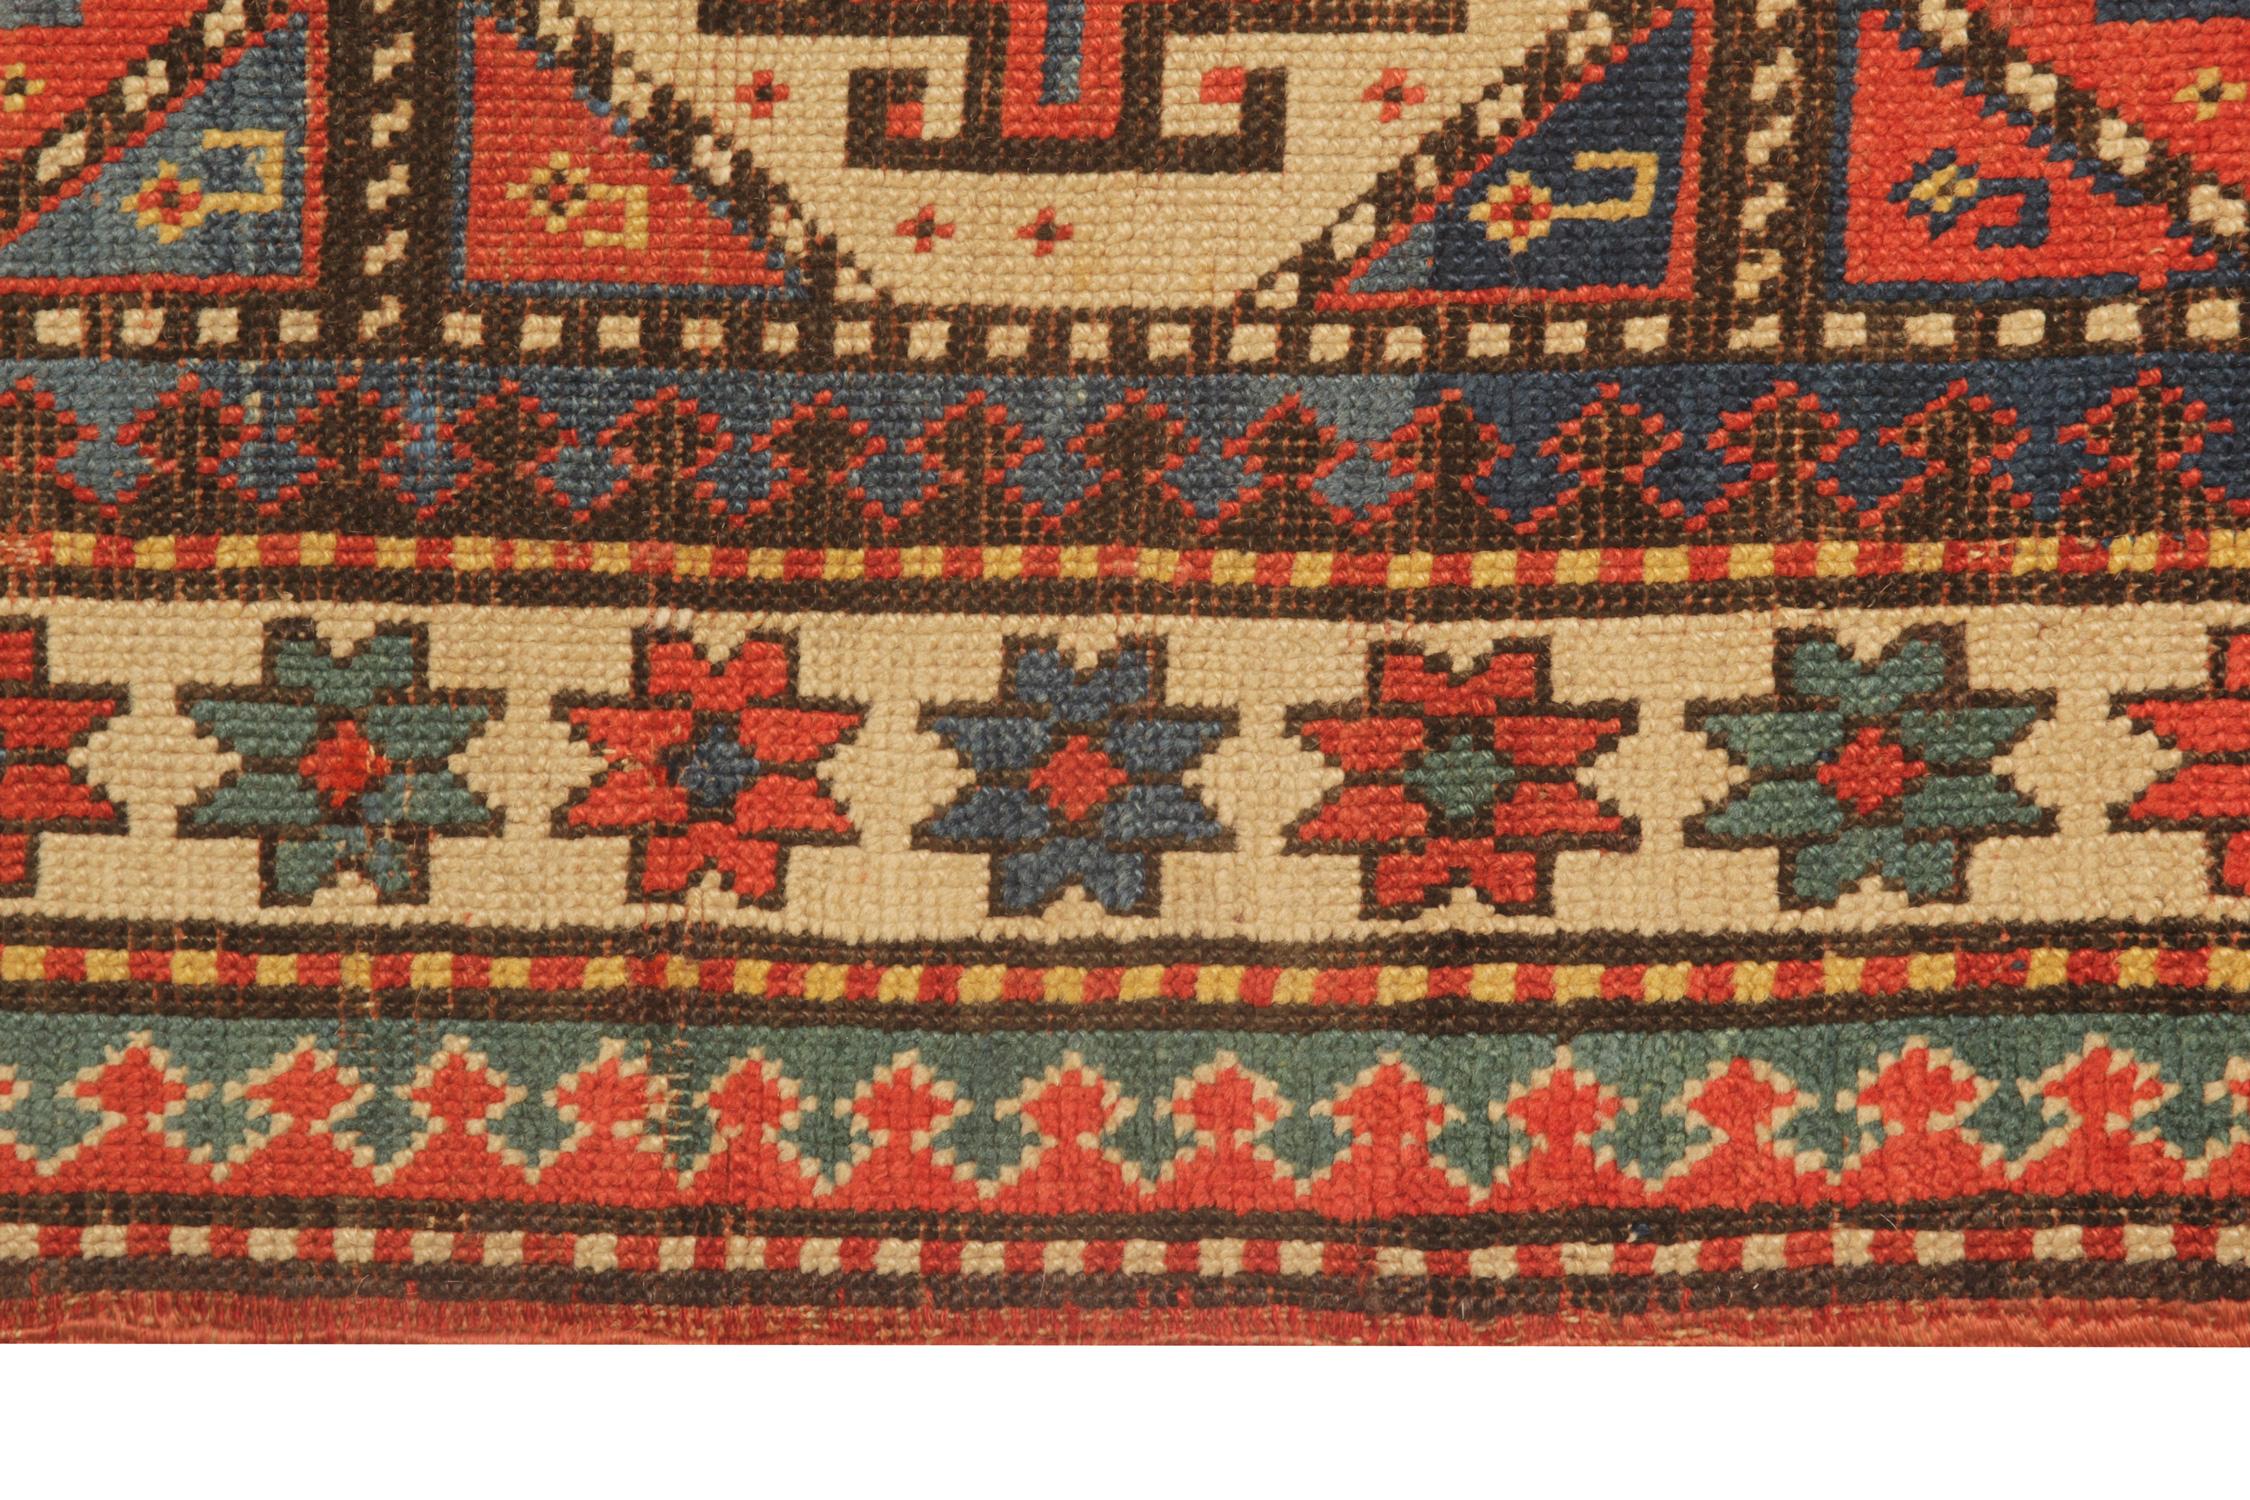 Vegetable Dyed Rare Antique Rug Caucasian Medallion Rug Handmade Carpet from Kazak Area CHR48  For Sale